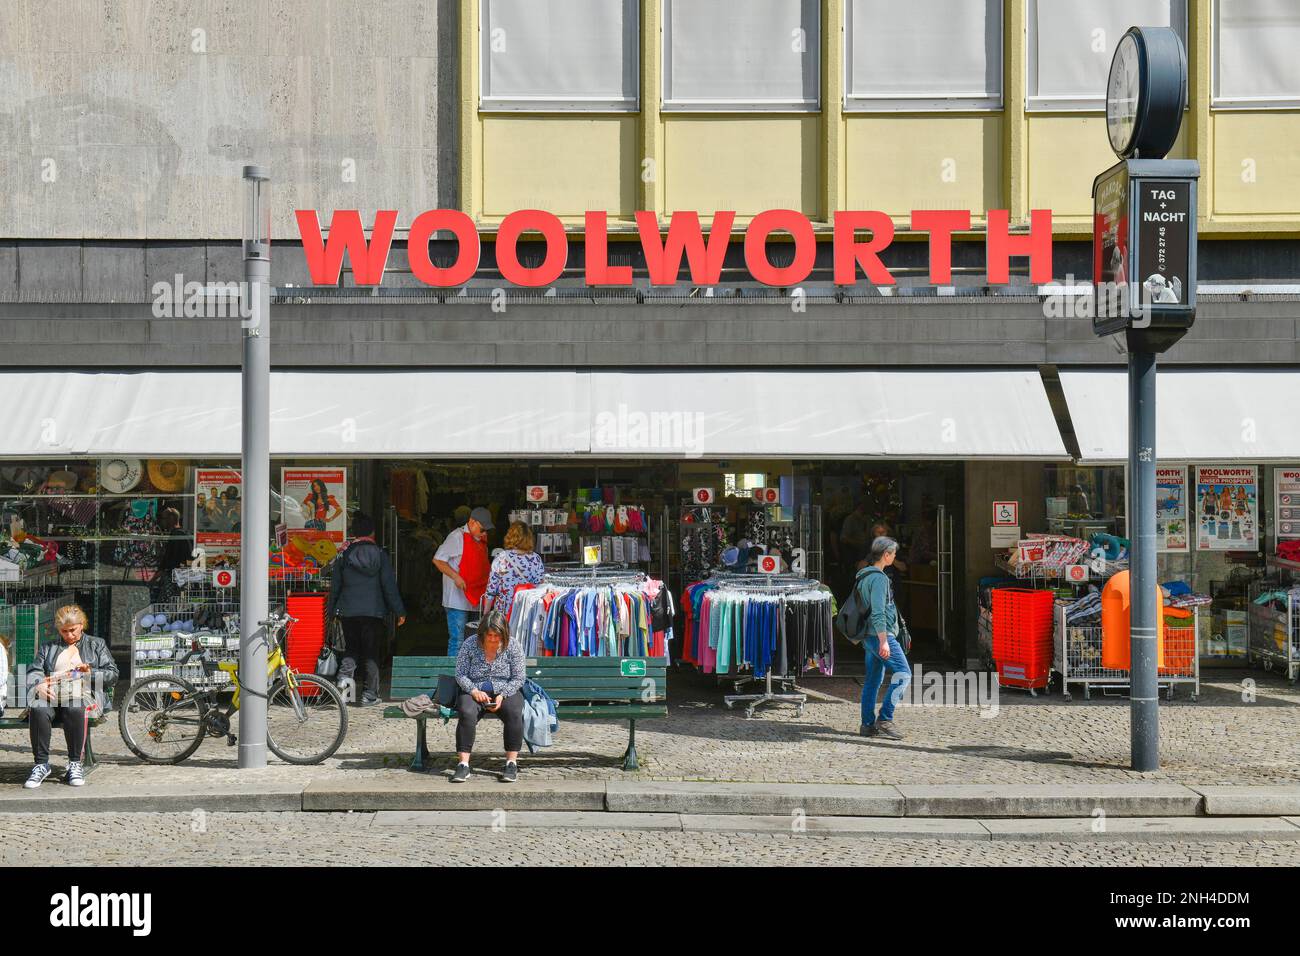 Town woolworth -Fotos und -Bildmaterial in hoher Auflösung – Alamy